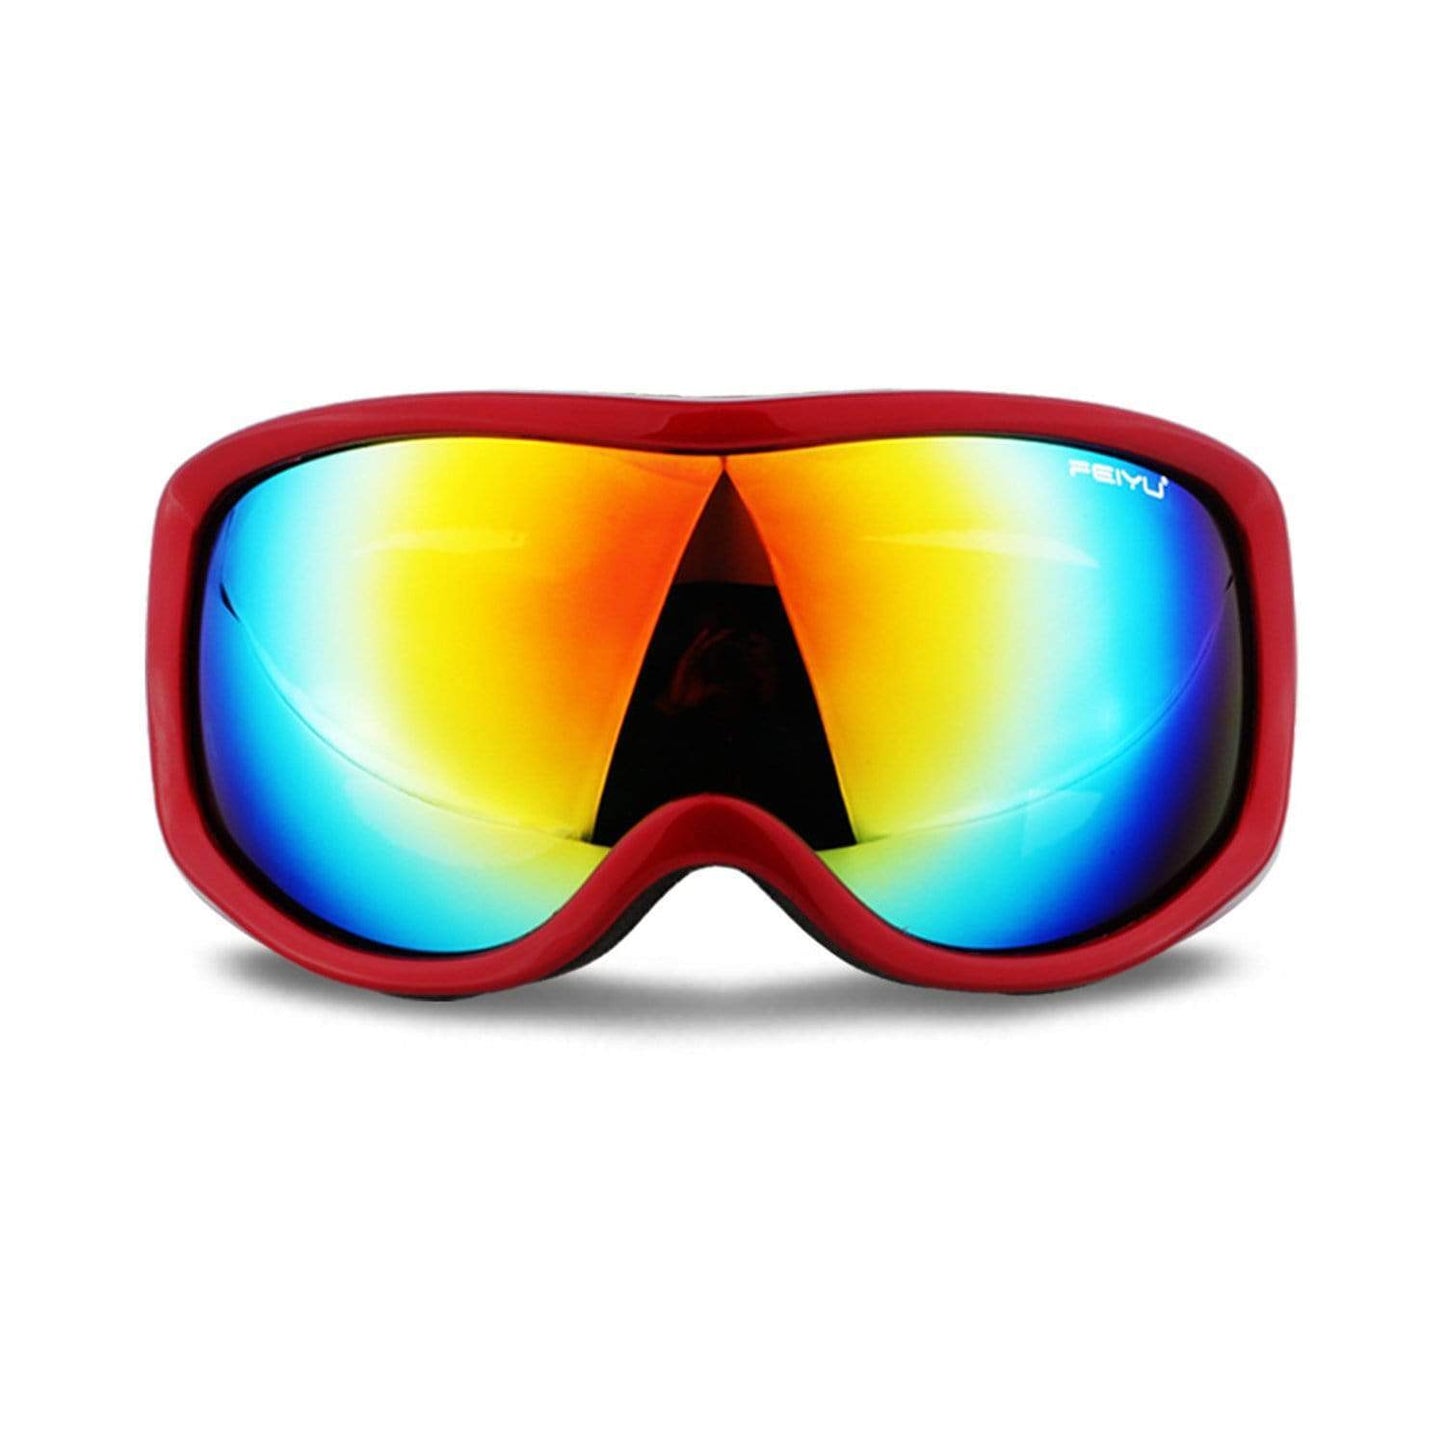 Single Layer Ski Goggles